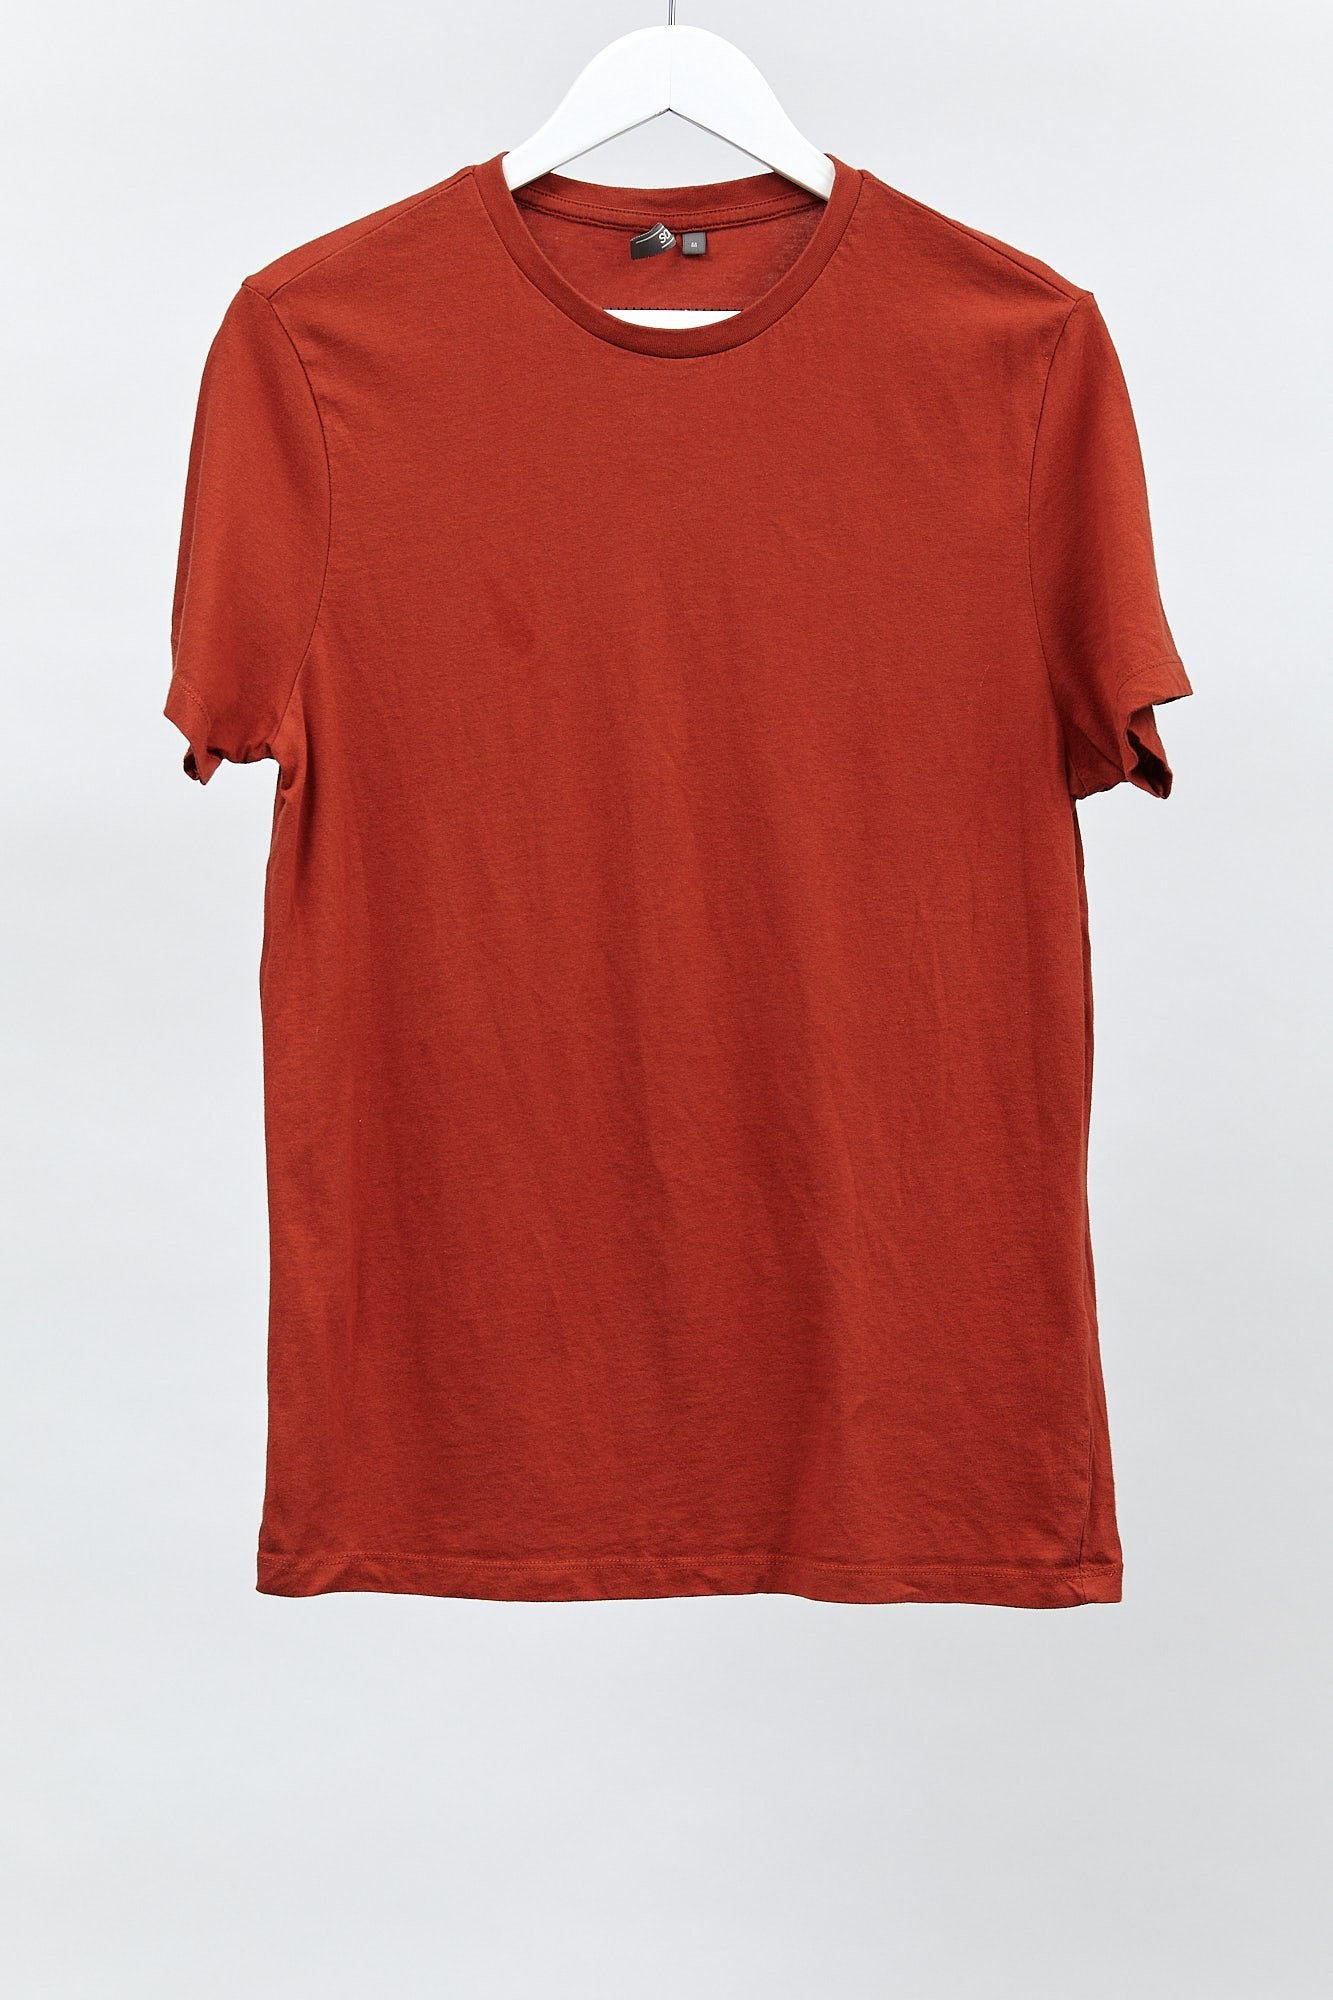 Mens ASOS Orange Red T-shirt: Size Medium